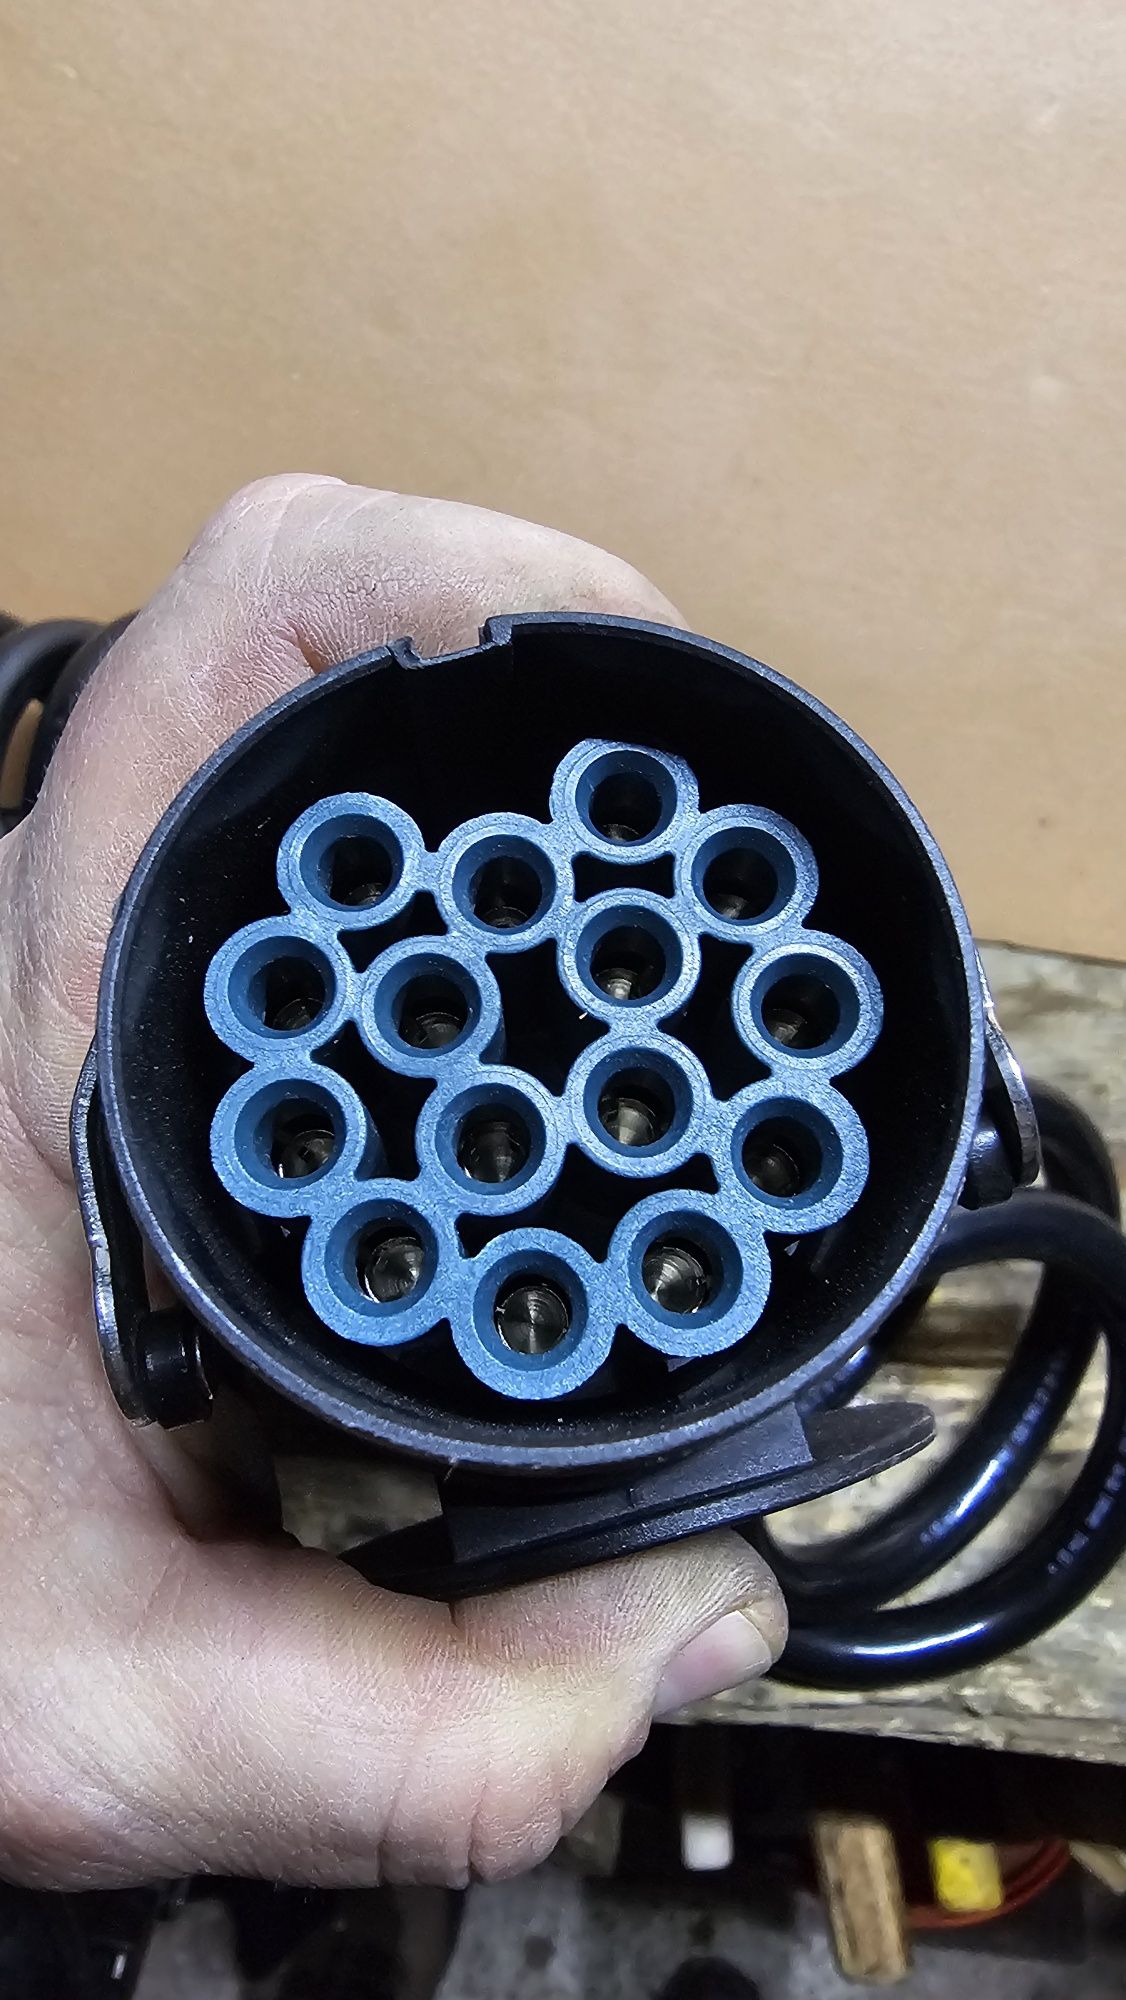 Cablu electric spiralat 15 poli / 4 m lungime / 24V